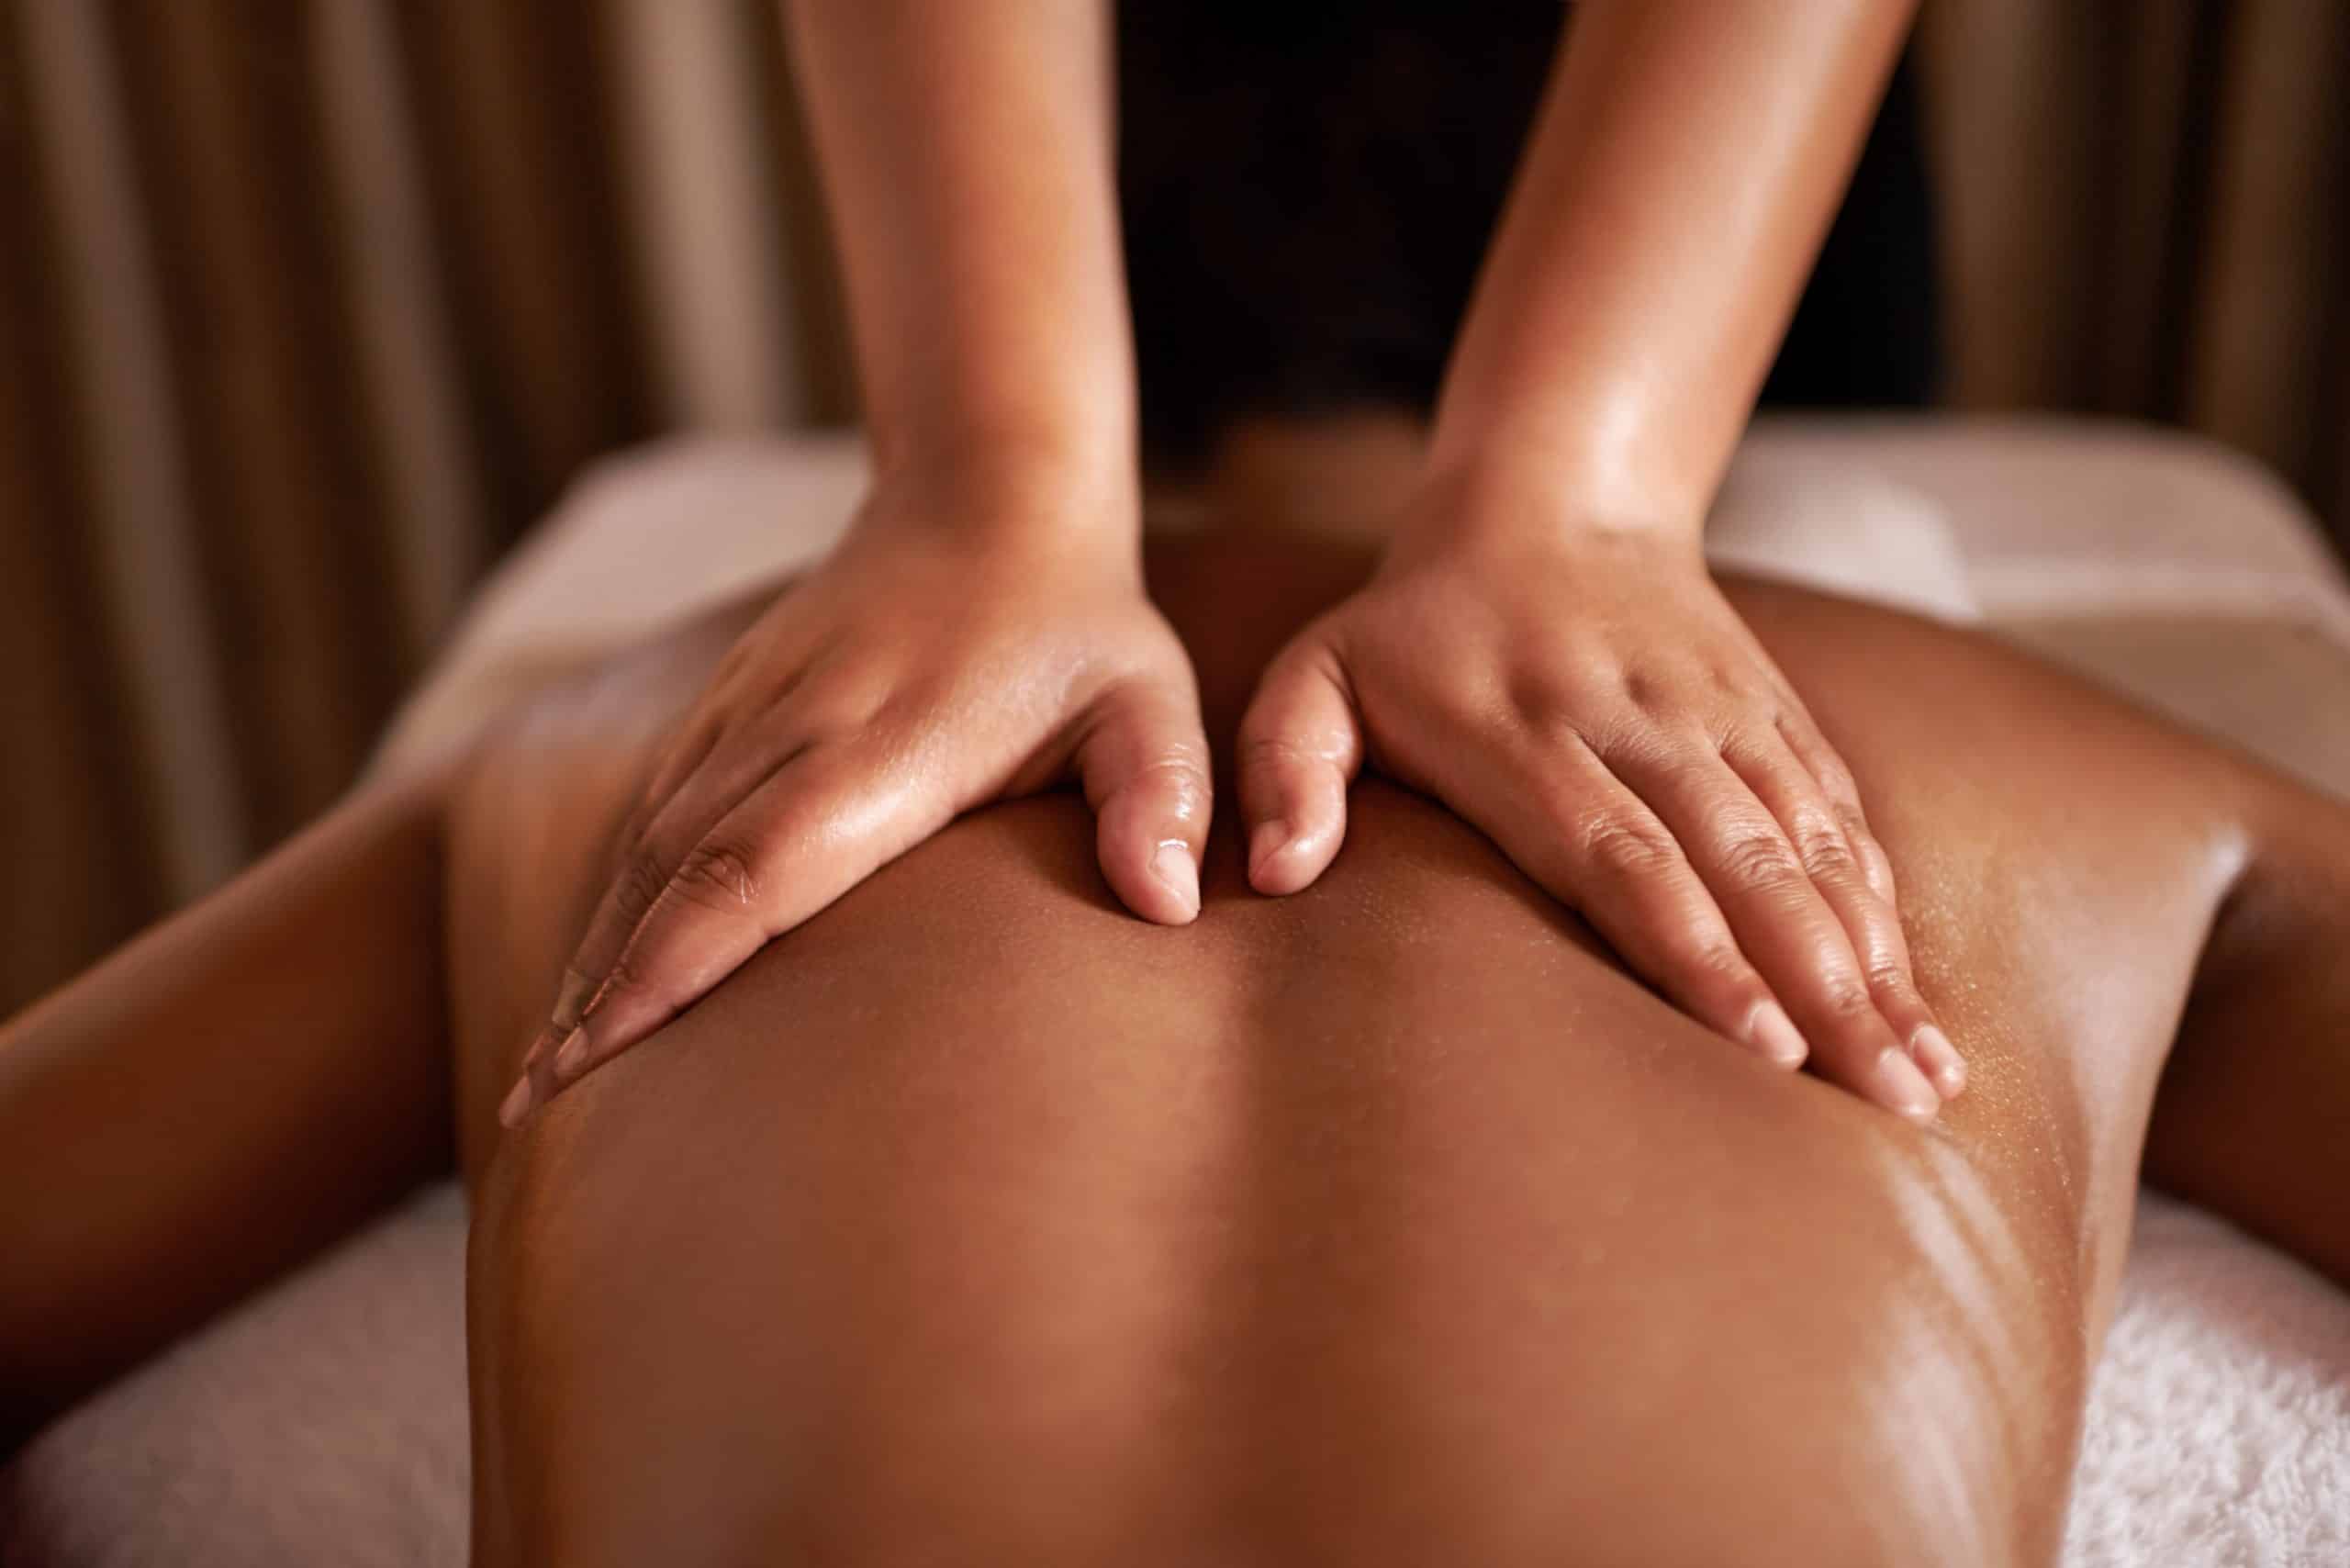 Intimate massage. Массаж тела. Классический массаж тела. Массаж спины. Массаж картинки.